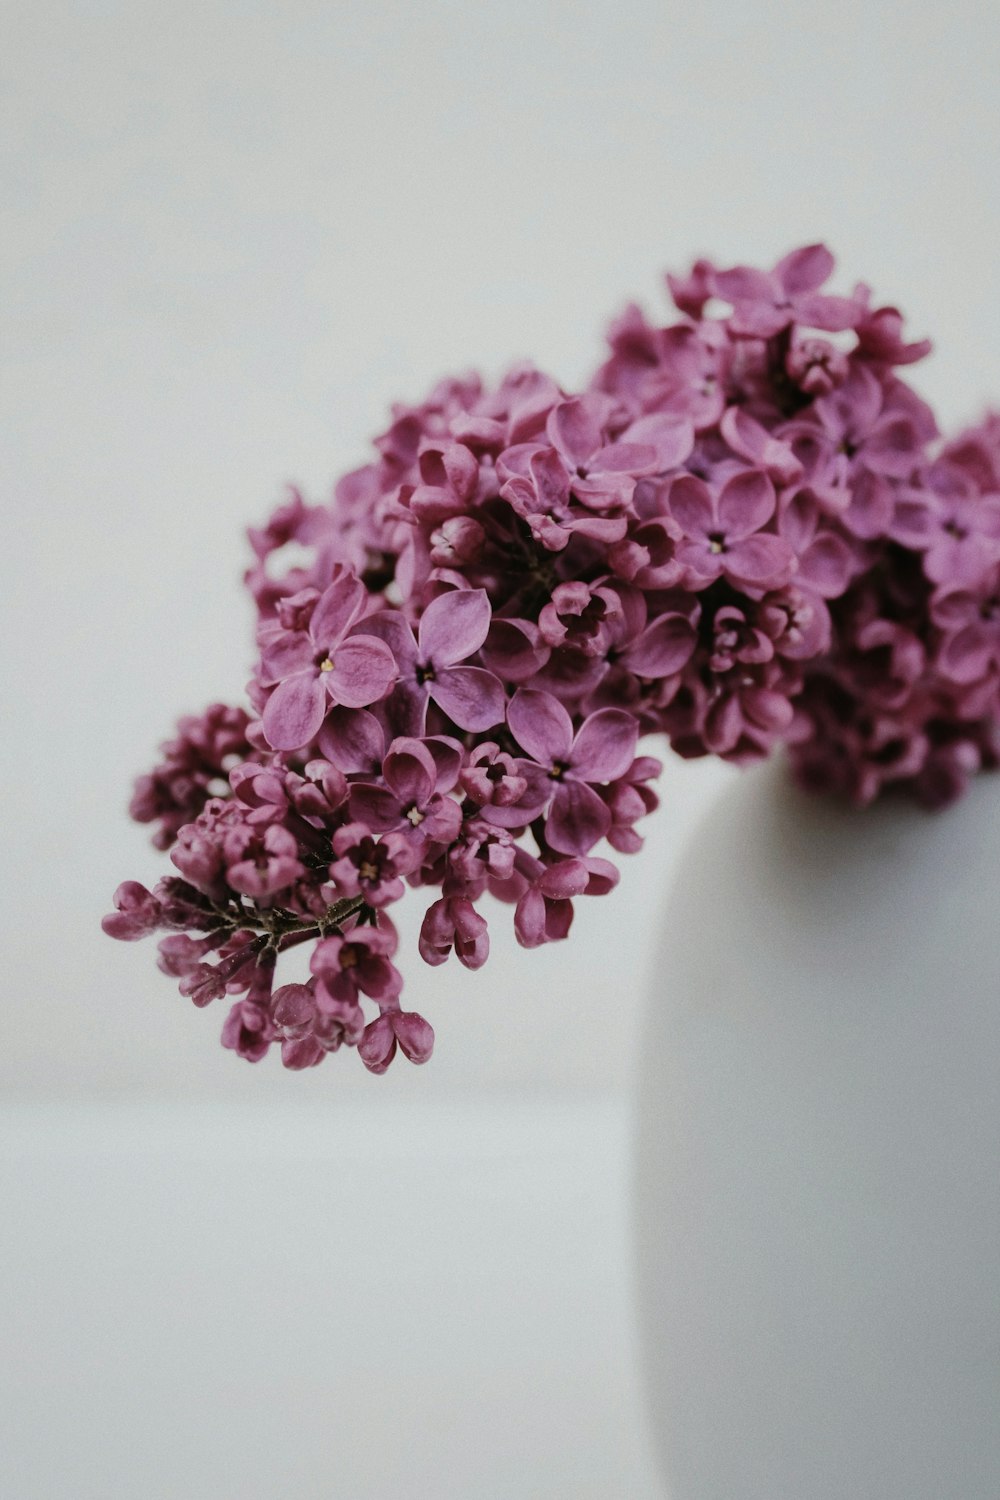 flores roxas no vaso de cerâmica branco